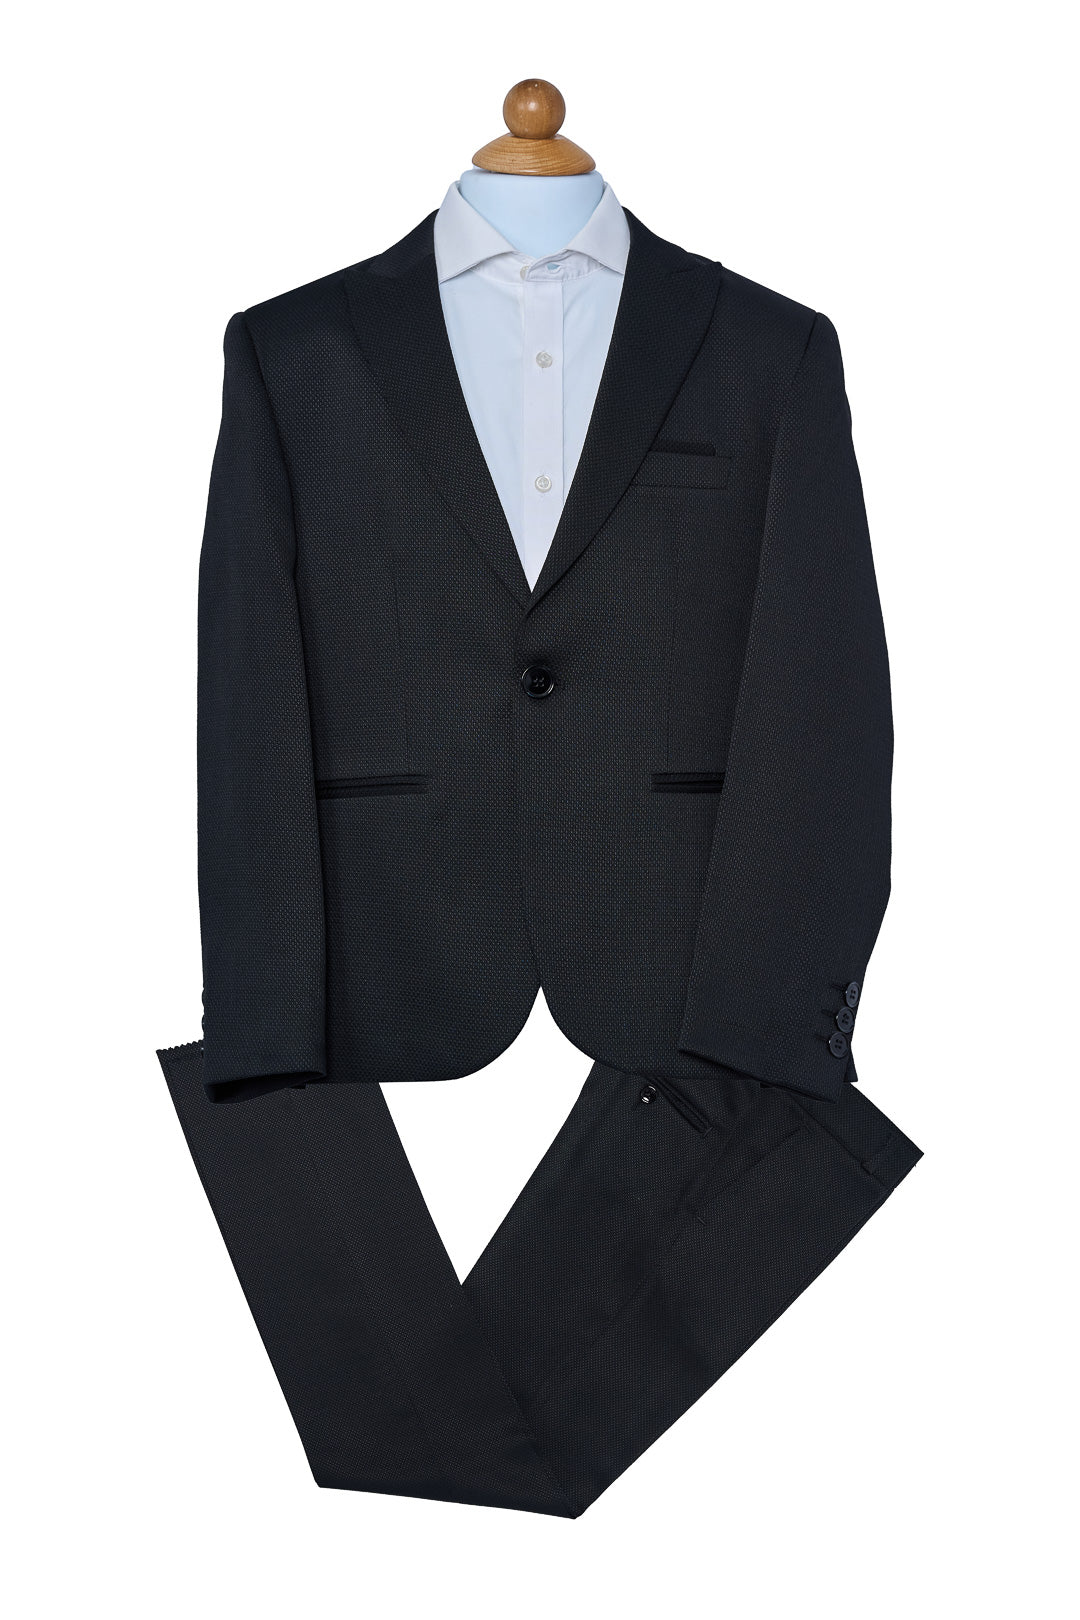 Black Tux Suit